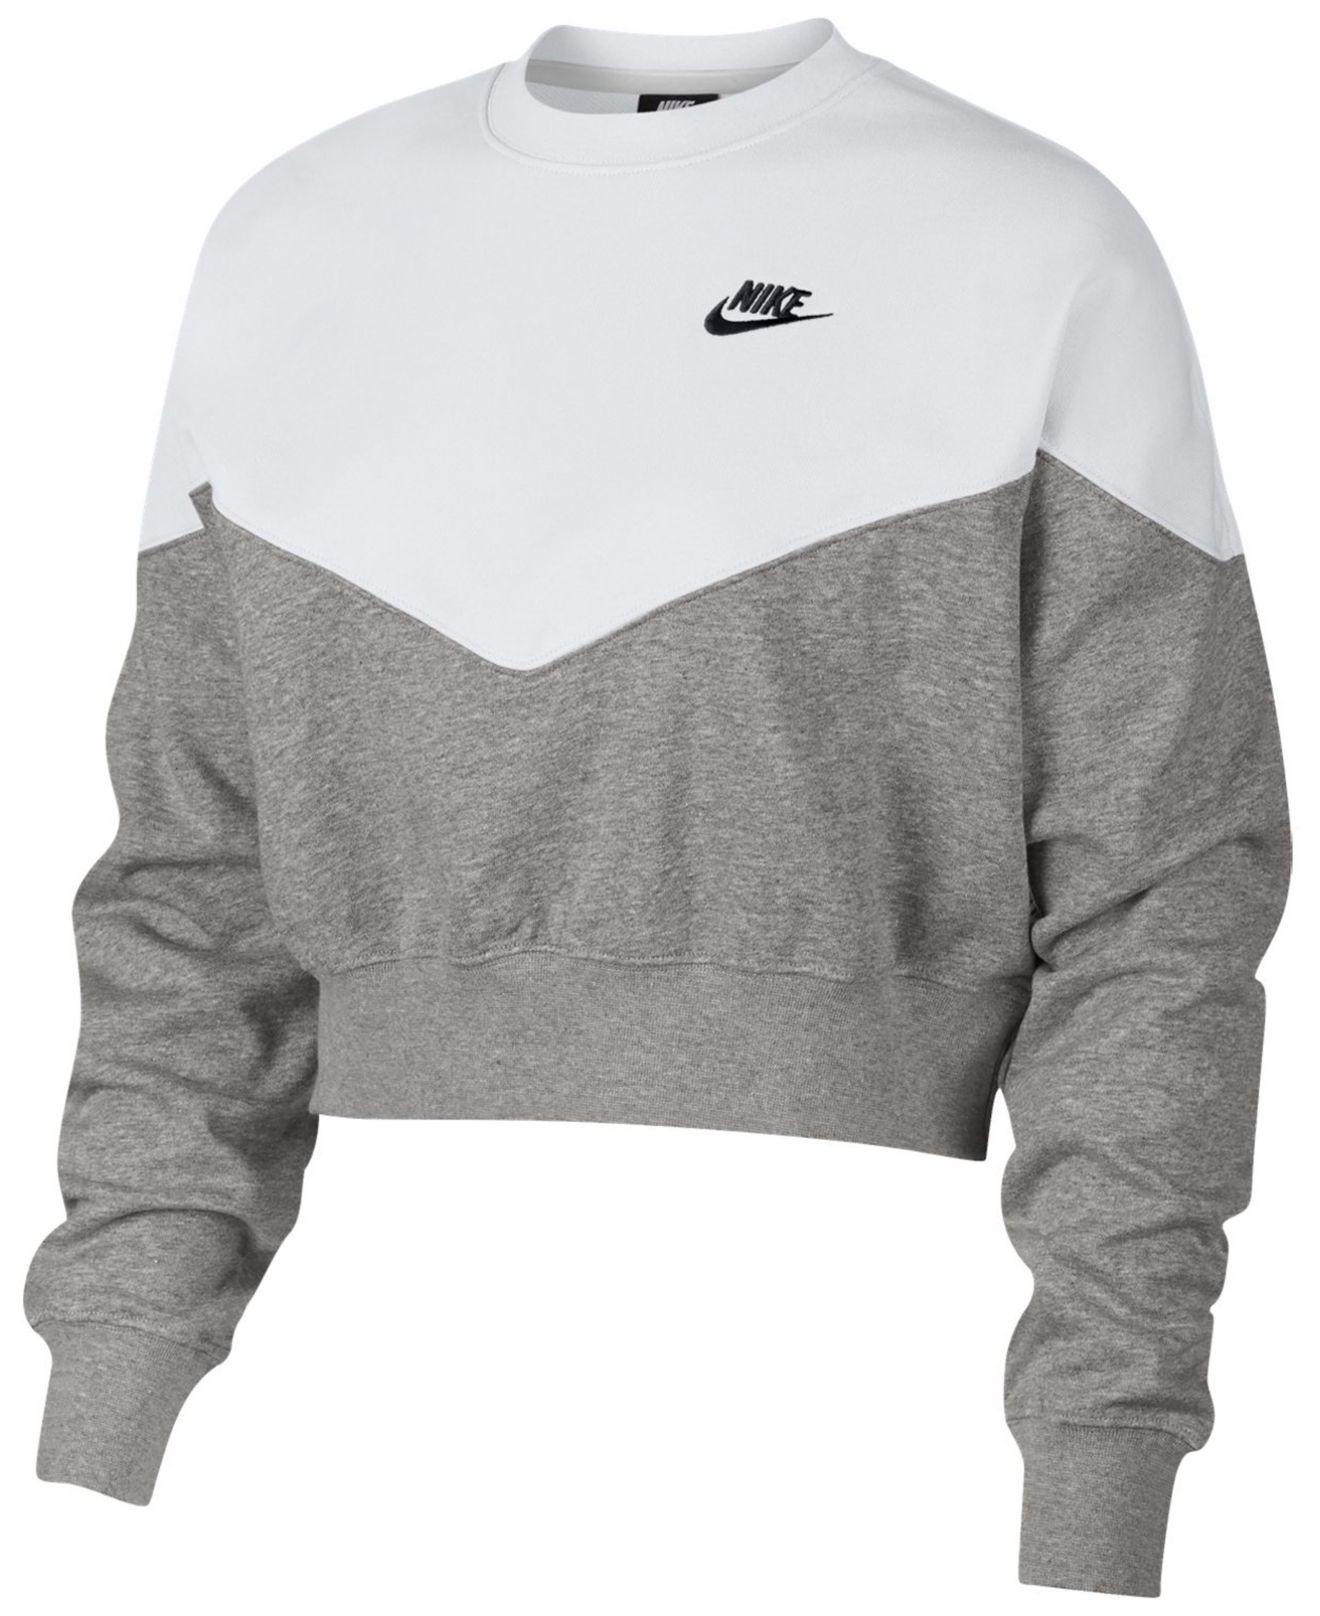 Lyst - Nike Fleece Colorblocked Cropped Sweatshirt in Gray